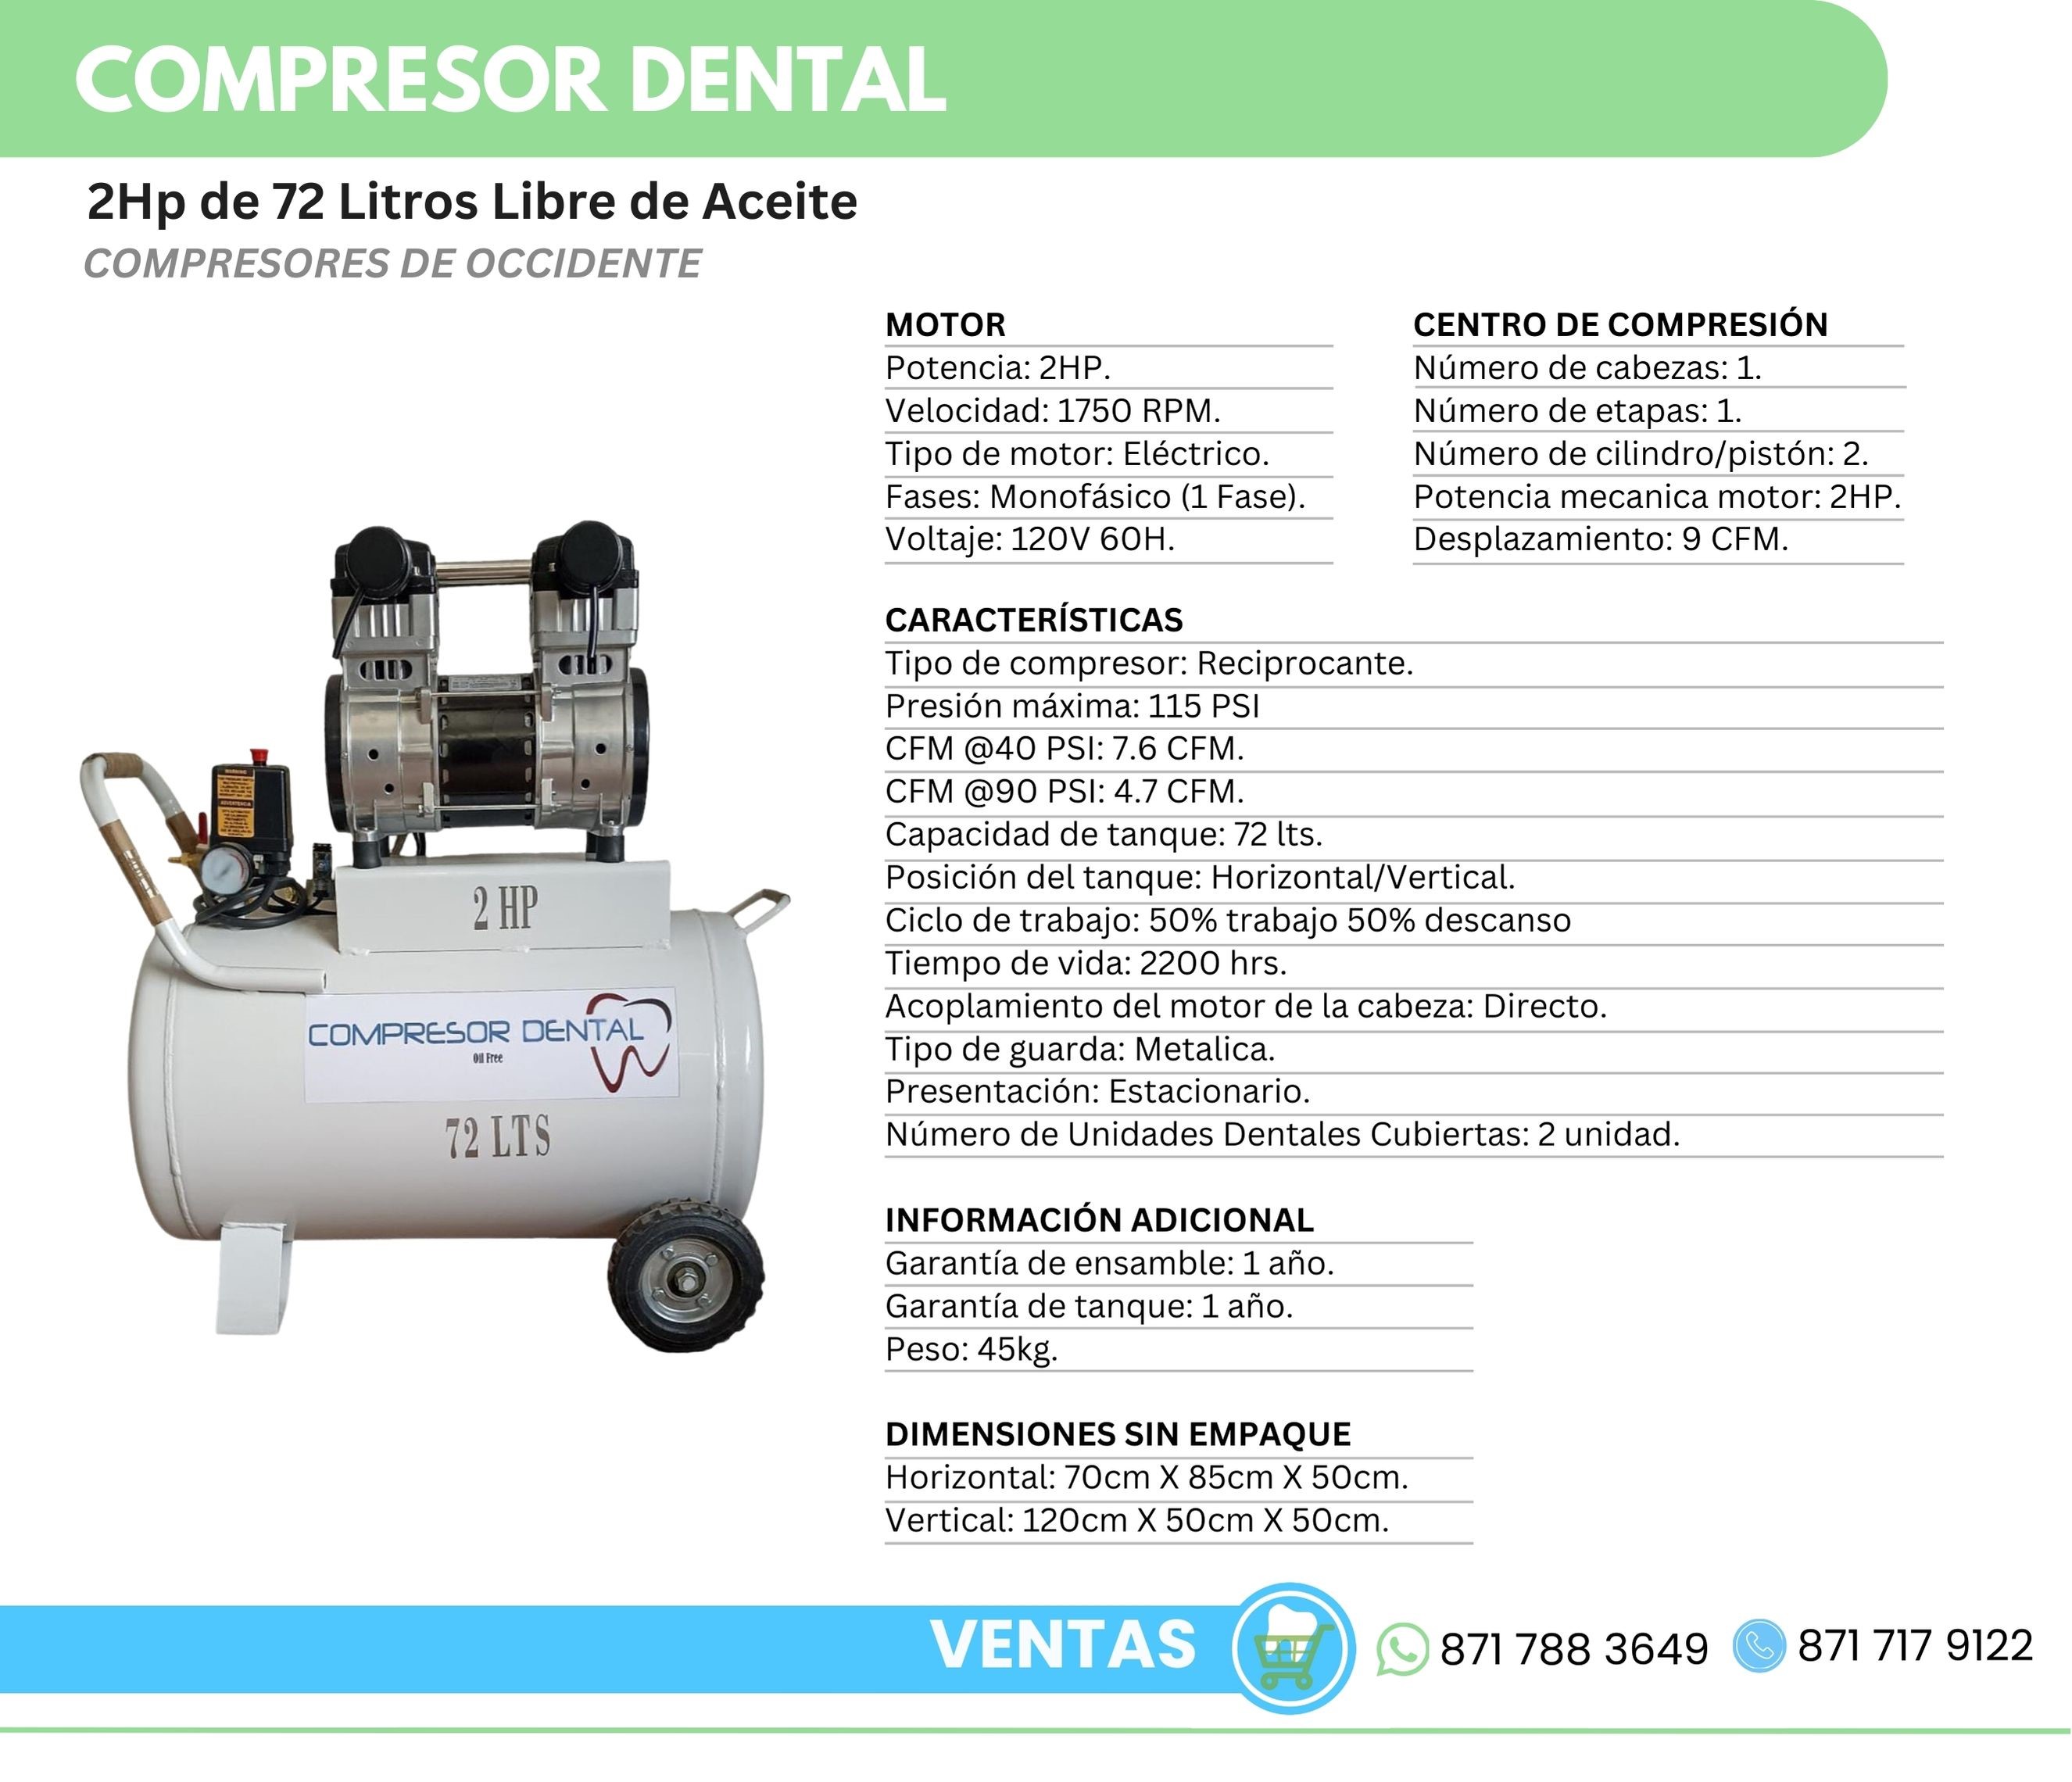 Compresor Dental 2Hp 72 Litros Libre de Aceite Compresores de Occidente Orthosign